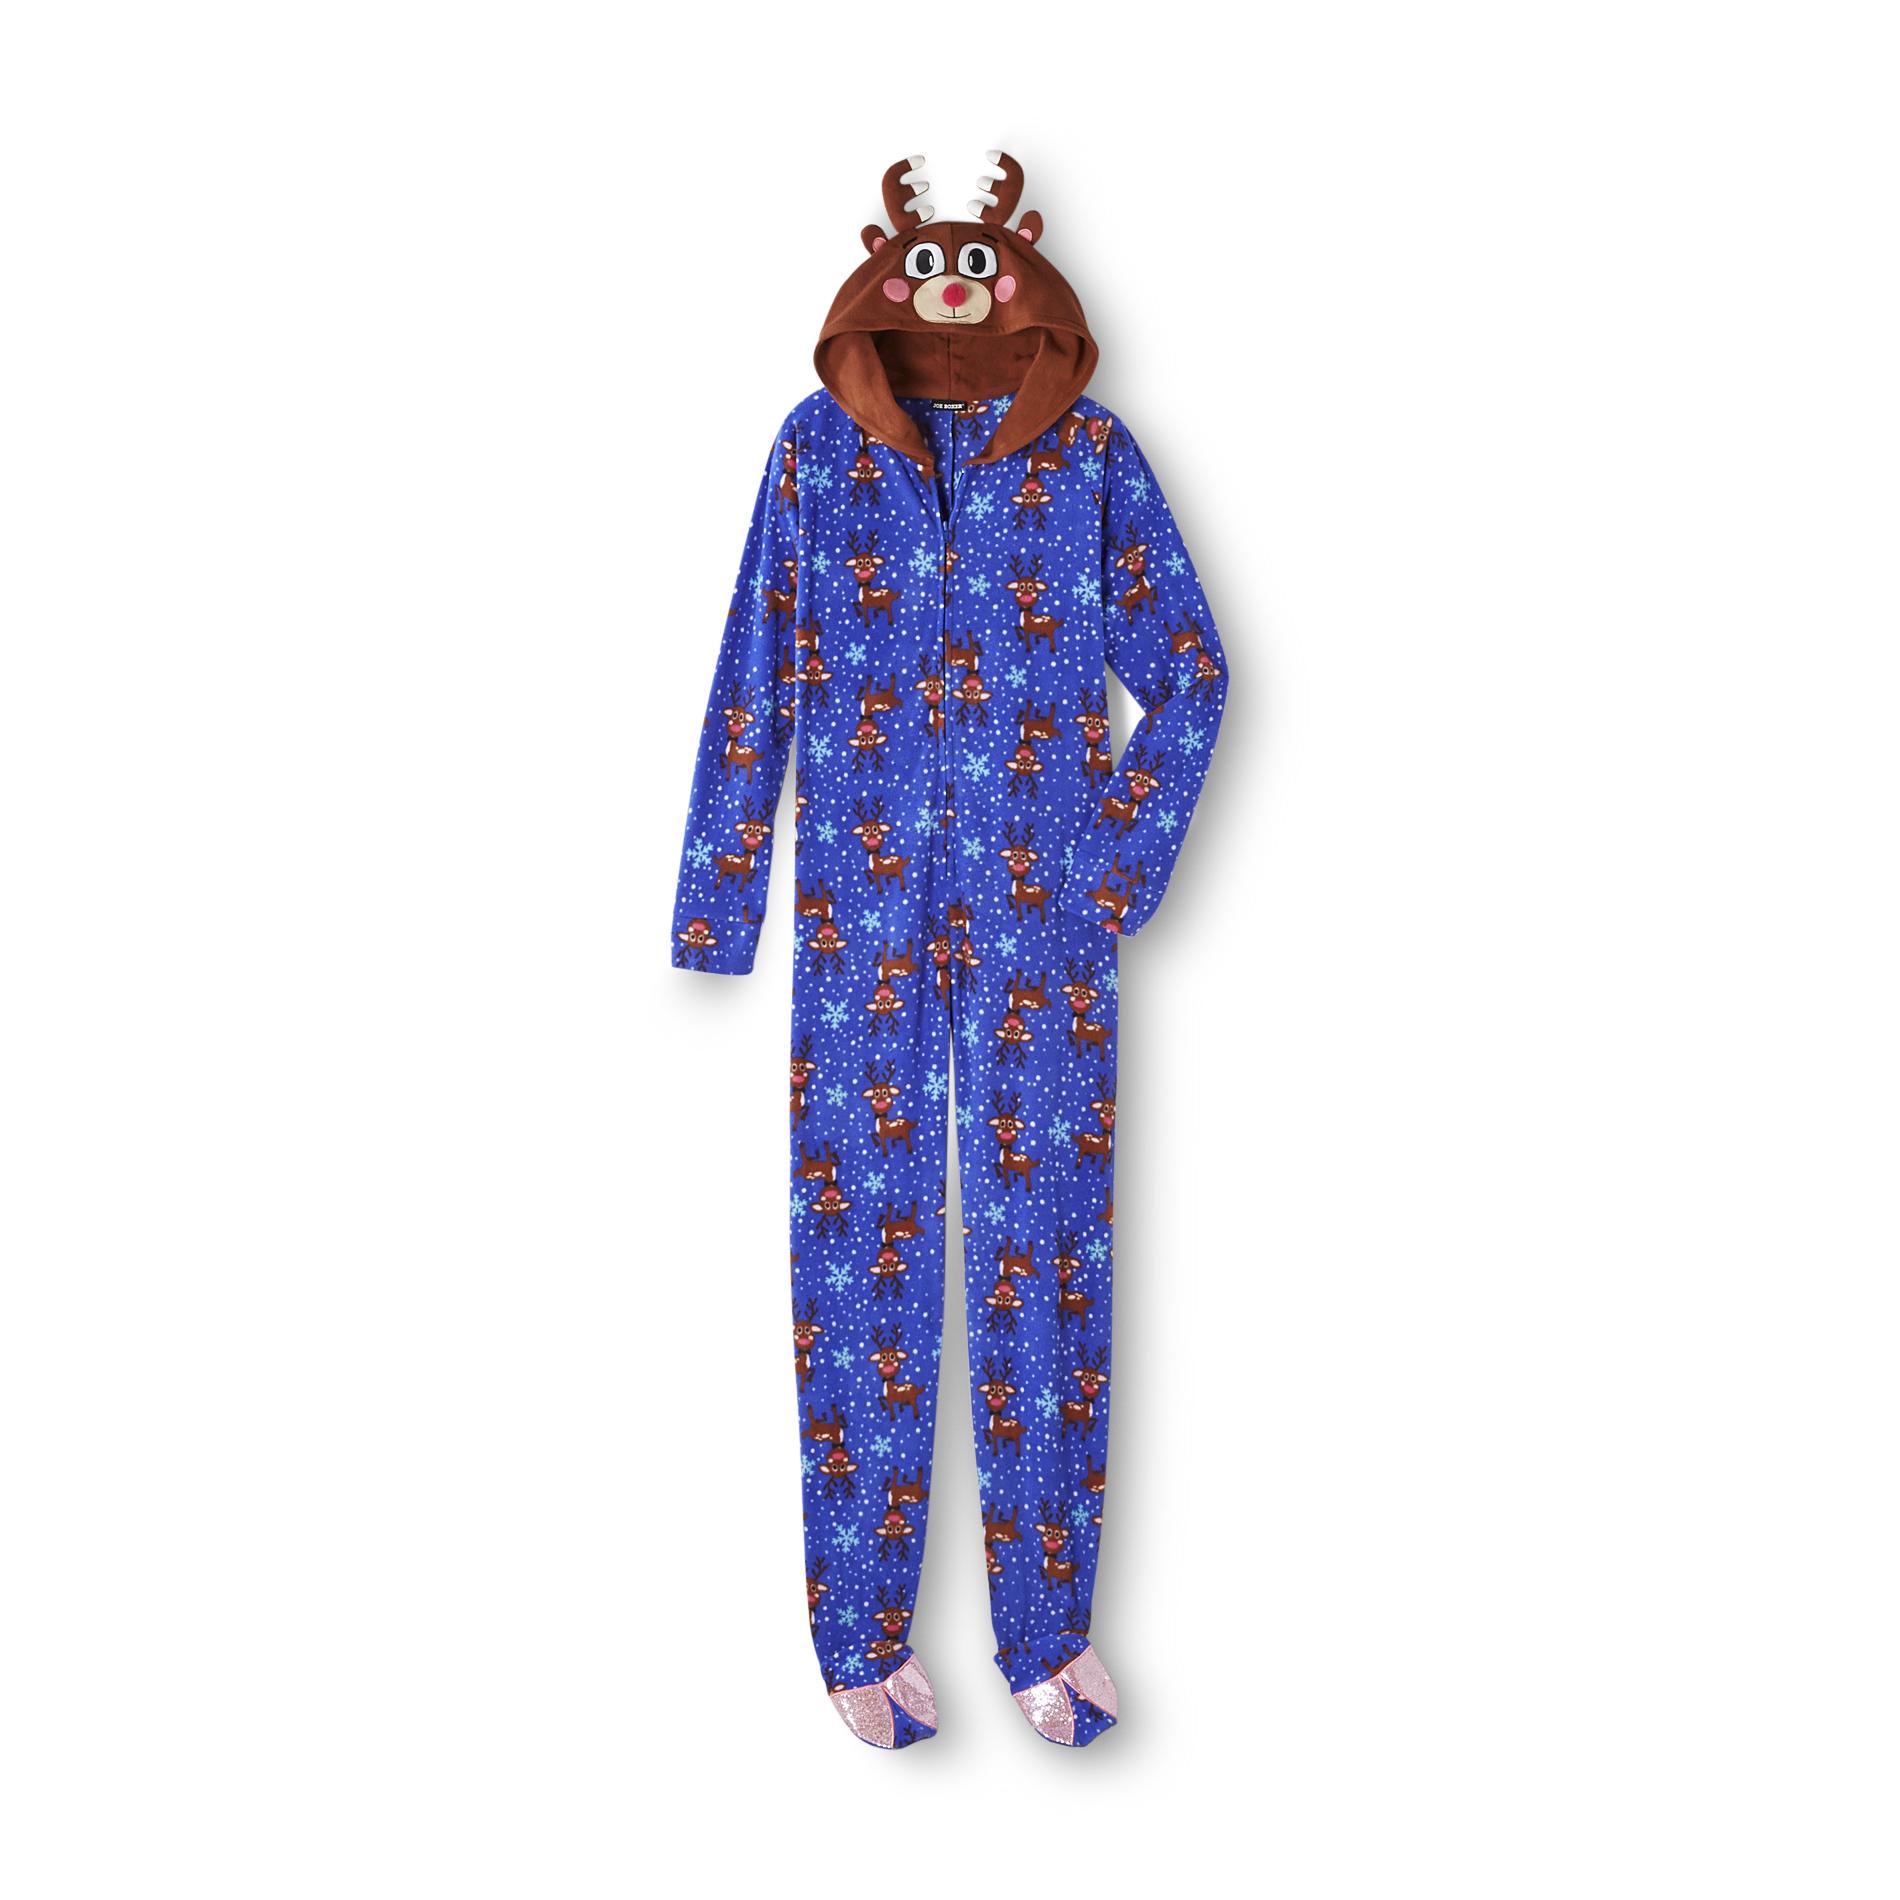 Joe Boxer Women's Footed Sleeper Pajamas - Reindeer